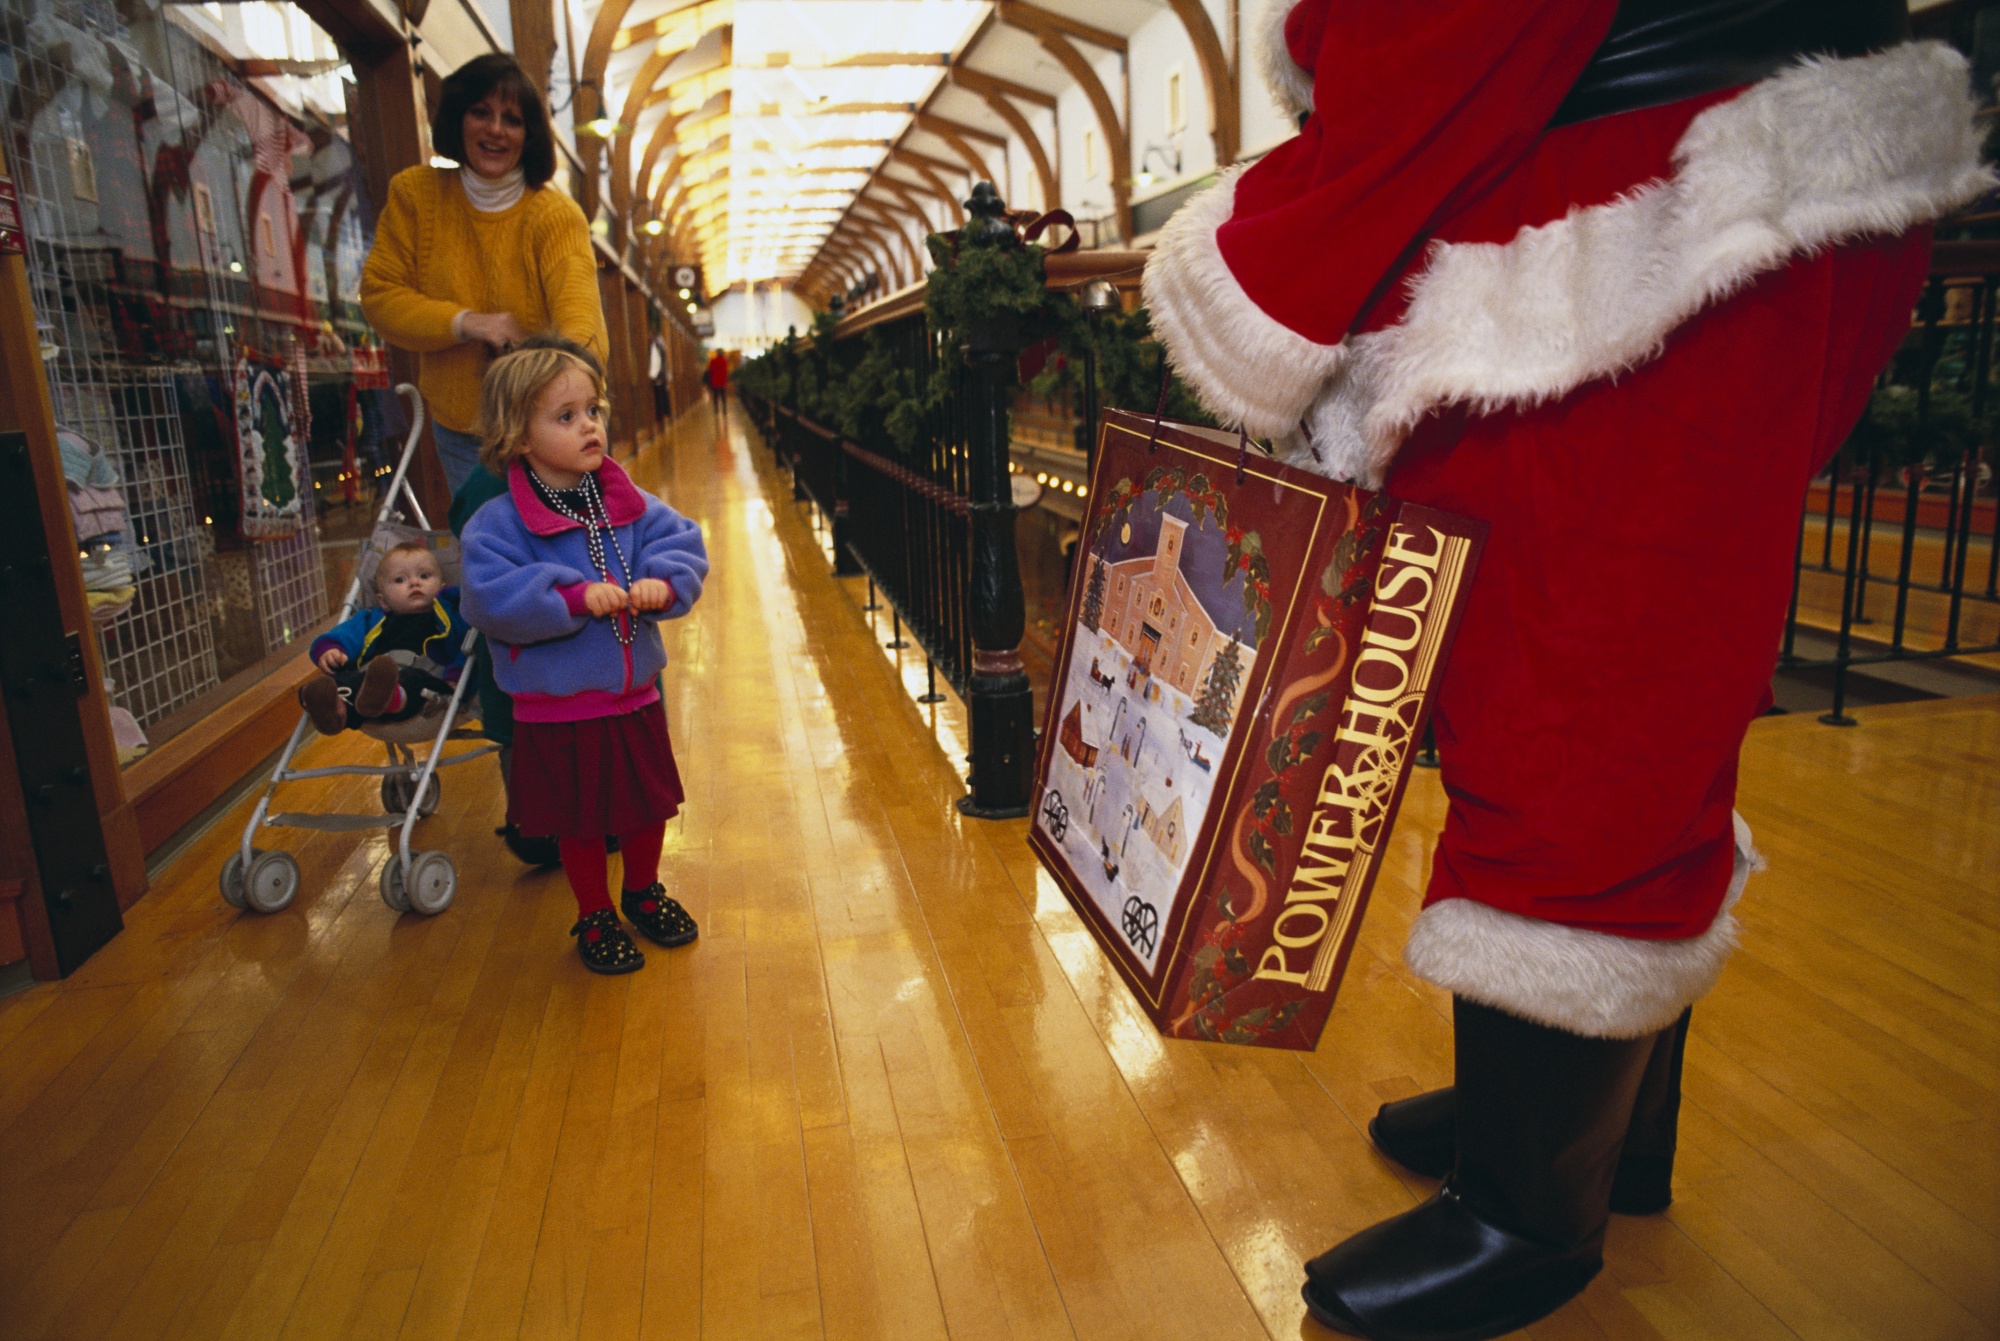 Santa Claus Experience at Park Meadows Mall begins November 10